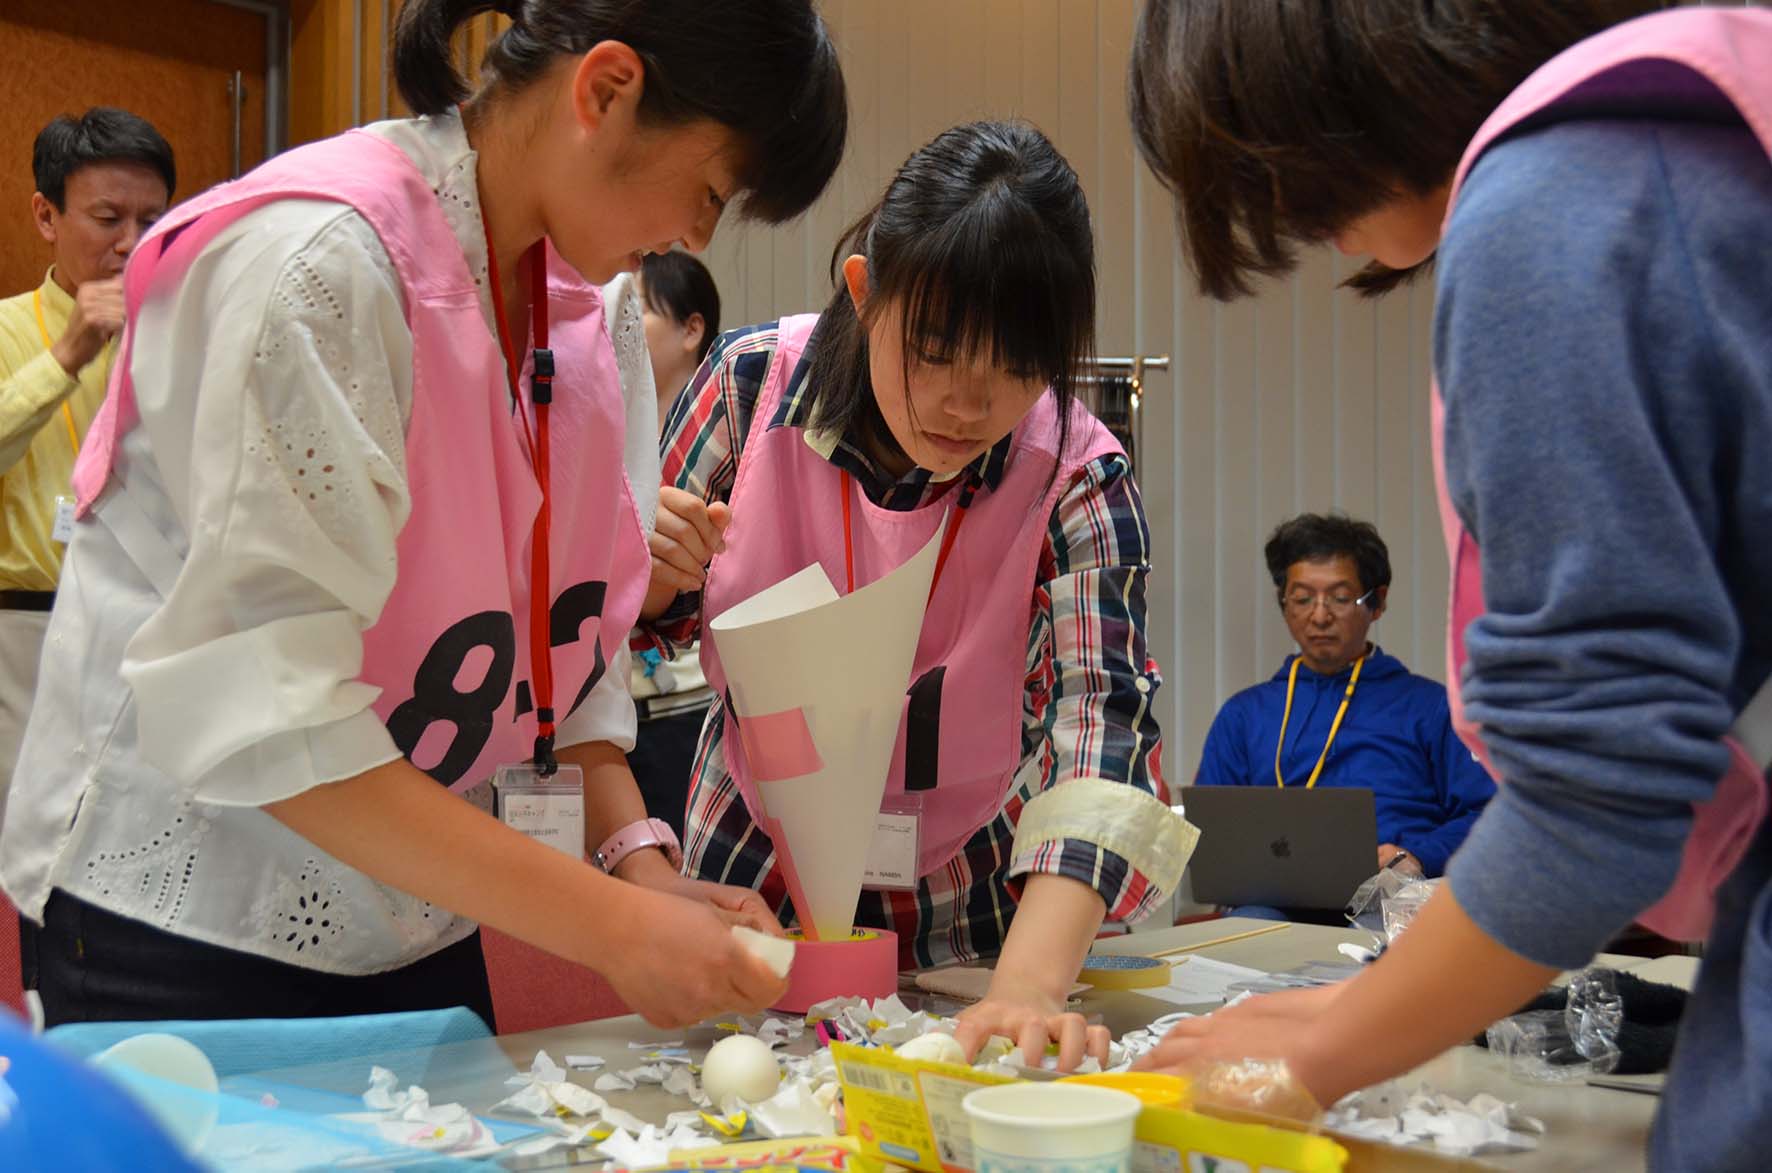 生卵を保護するため、用意された材料を工夫し、独創的な装置を作り上げる生徒たち